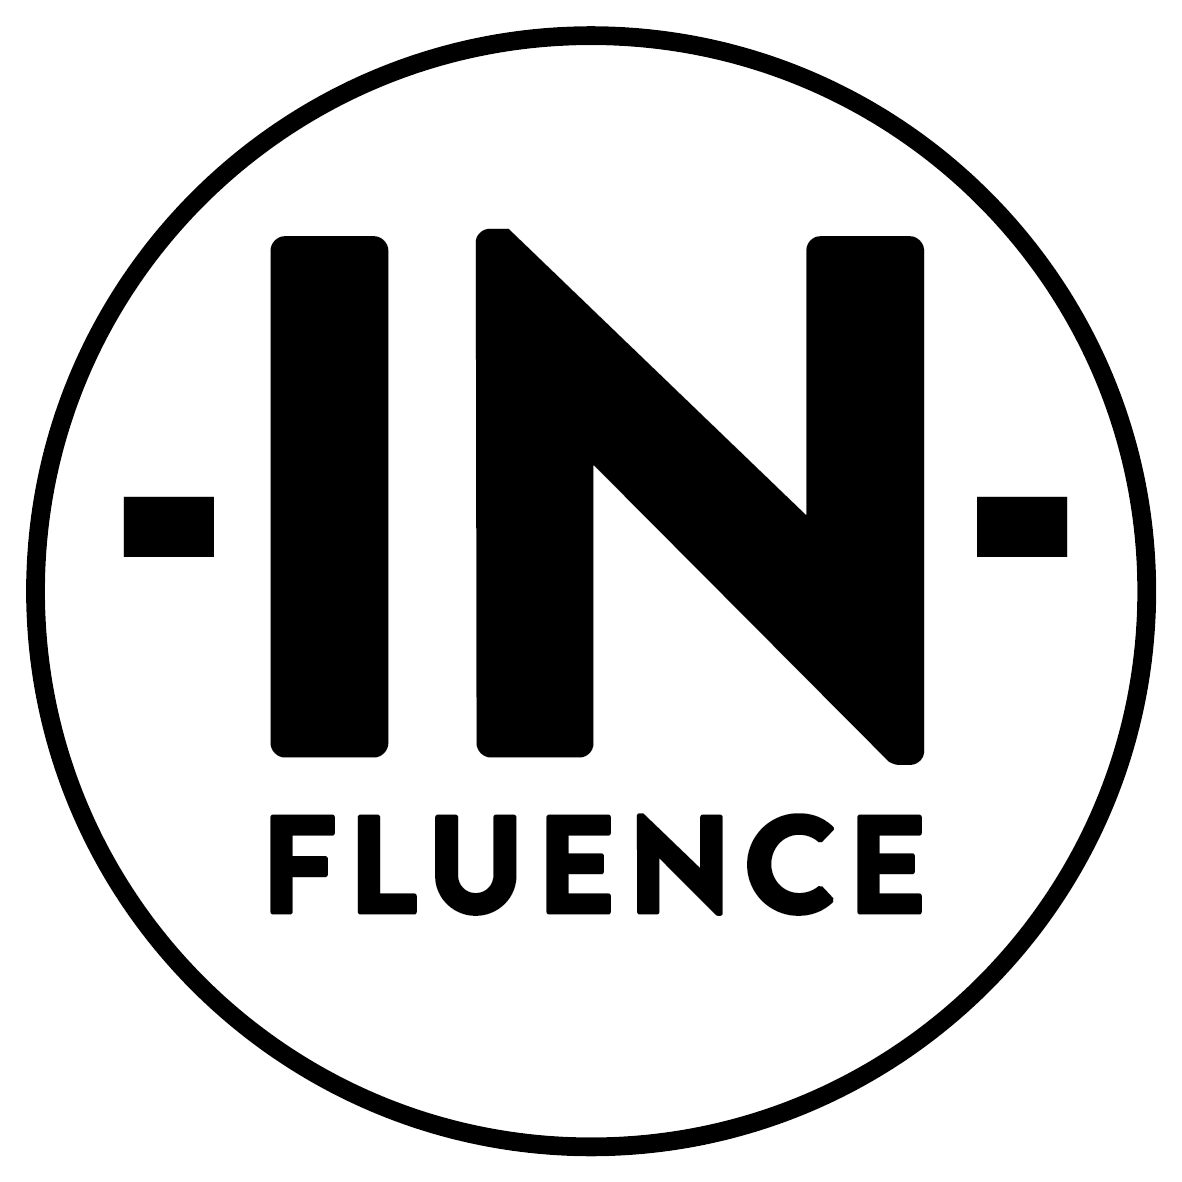 In-Fluence